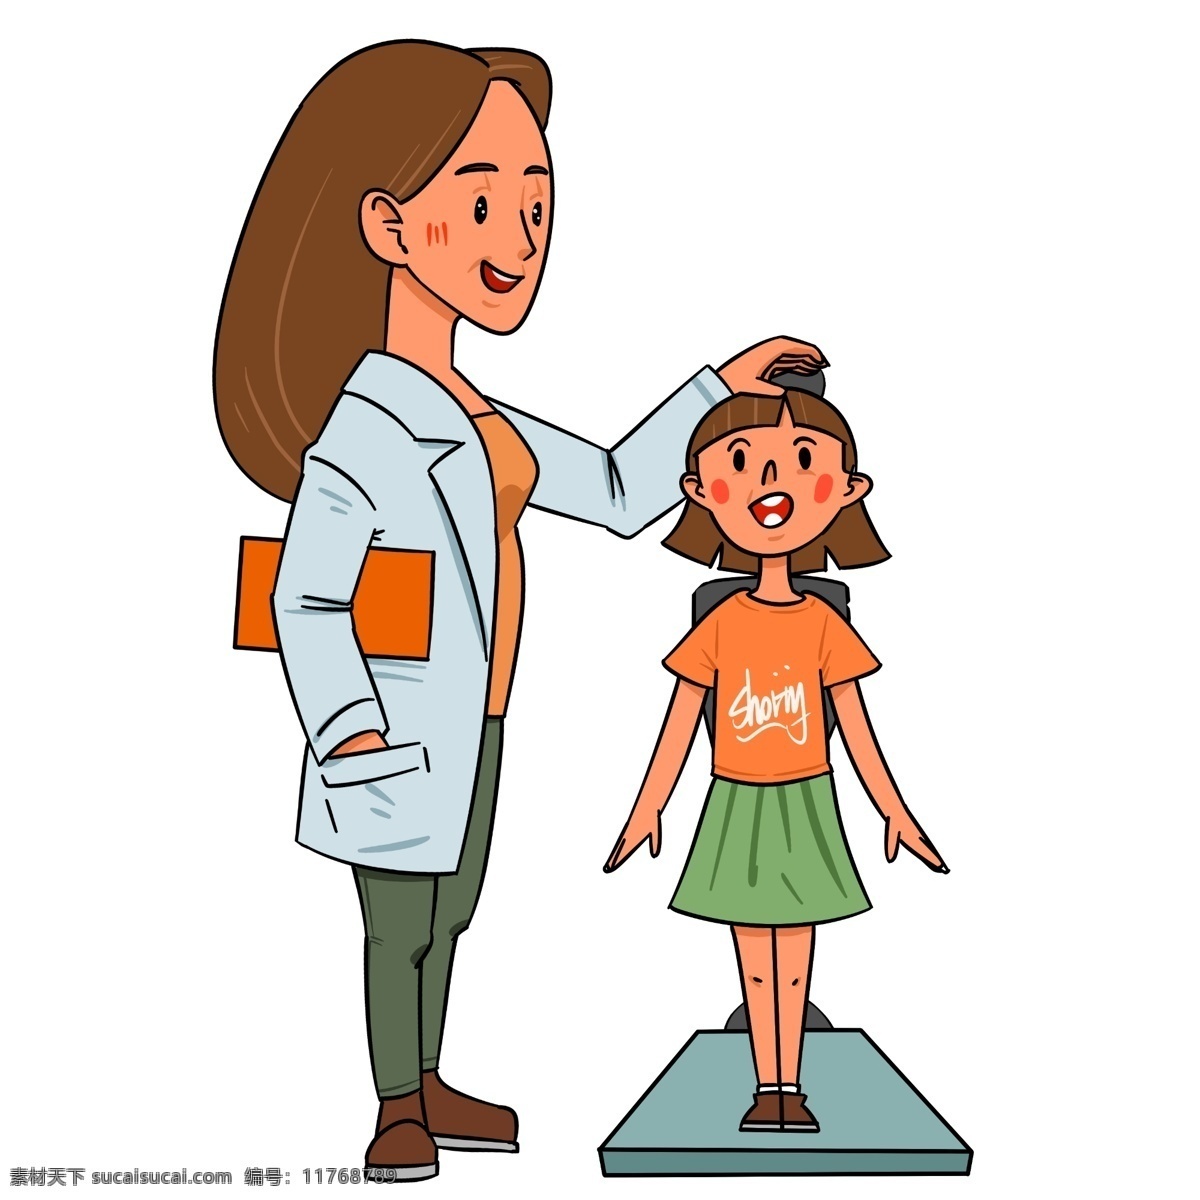 手绘 体检 量 身高 插画 小女孩 女医生 医疗器械 手绘人物插画 身高测量器 量身高插画